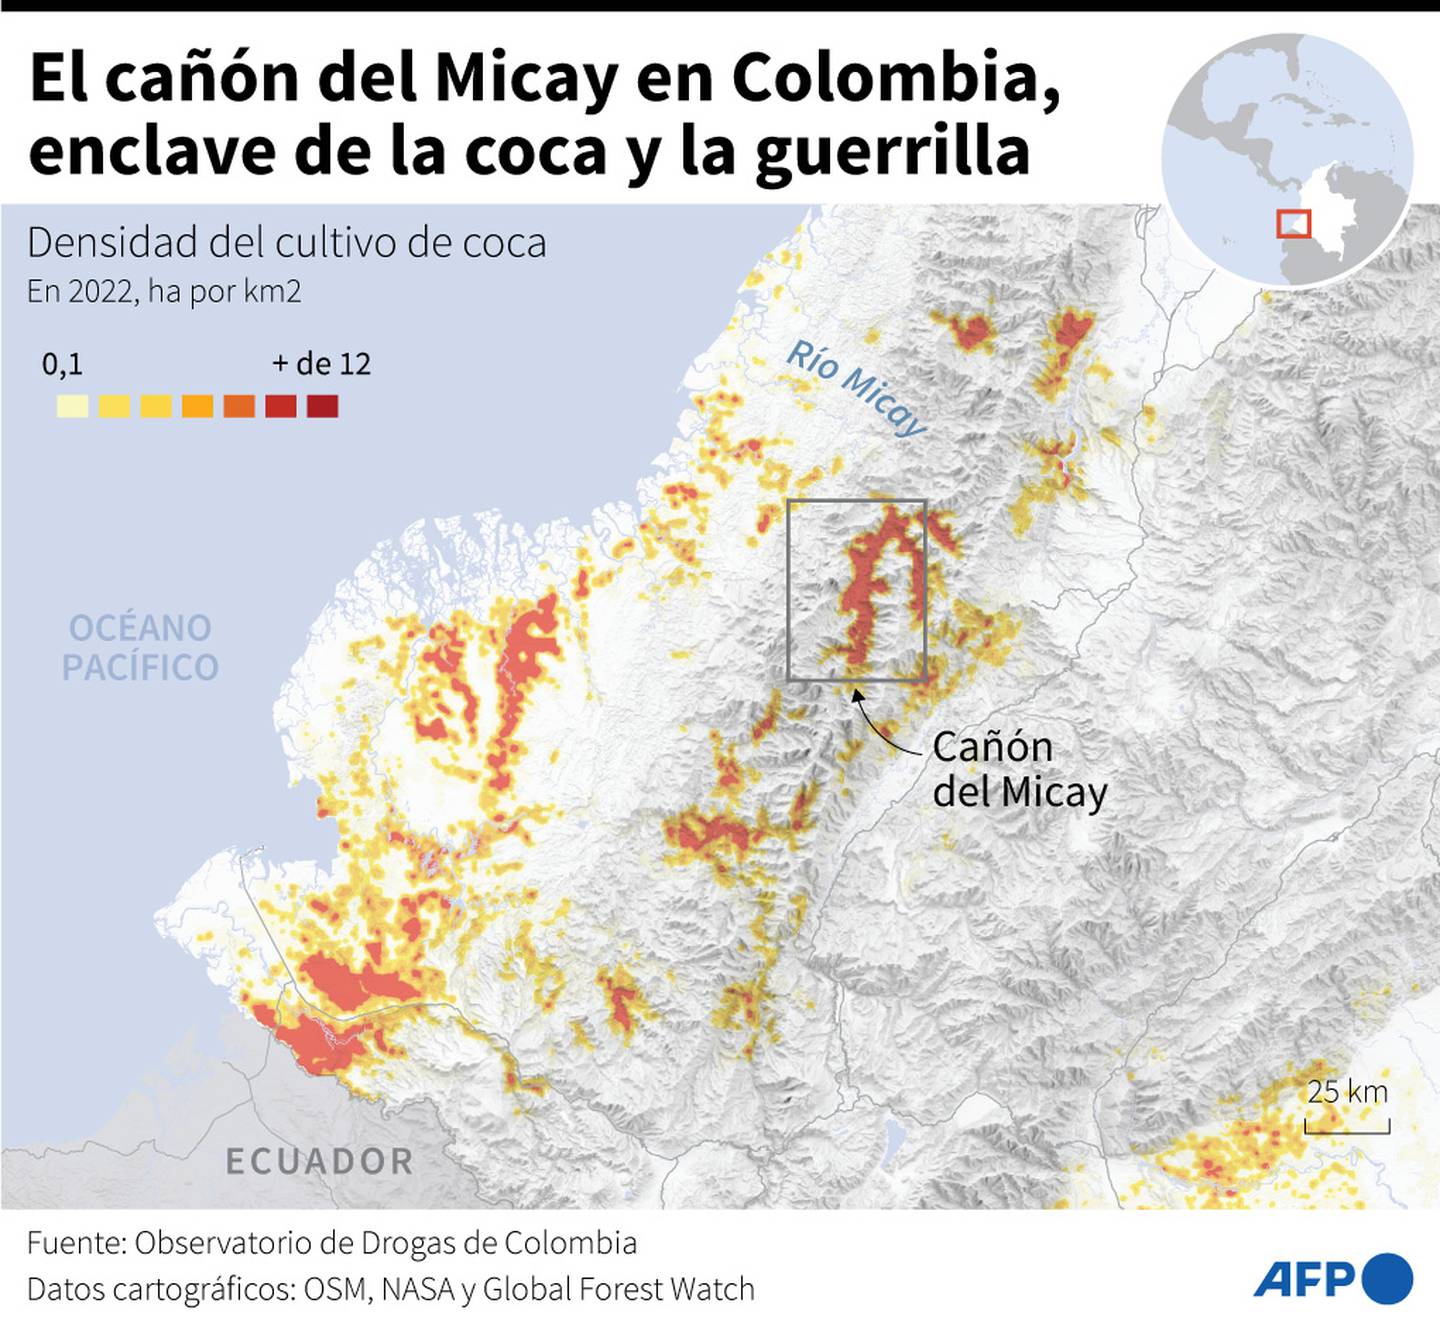 Las Fuerzas Armadas colombianas siempre tienen dificultades para accerder a esta zona de la selva